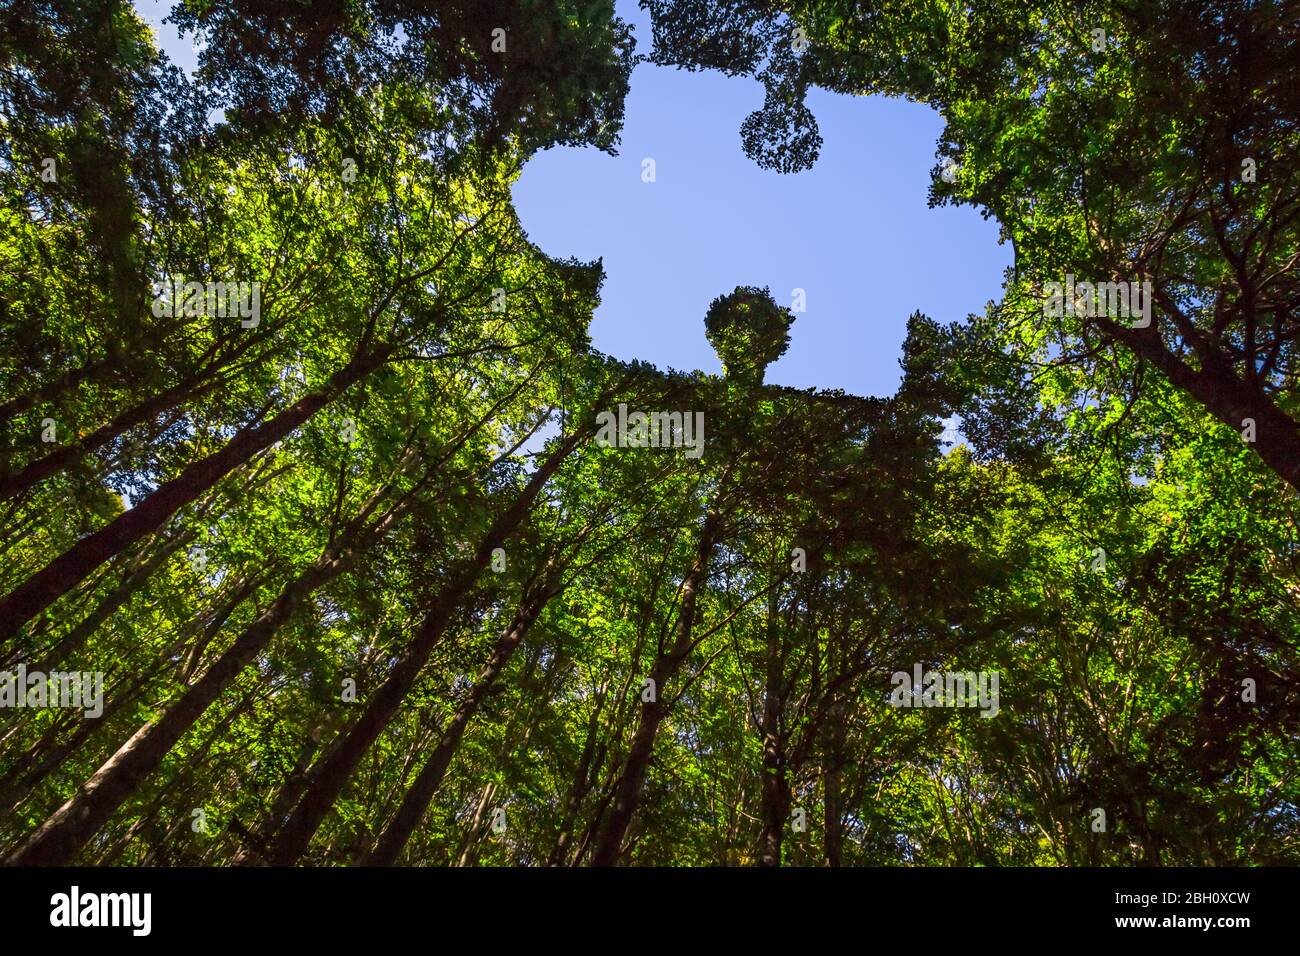 Das Vordach dieses Waldes hat ein Loch in der Form eines Puzzleteils Stockfoto